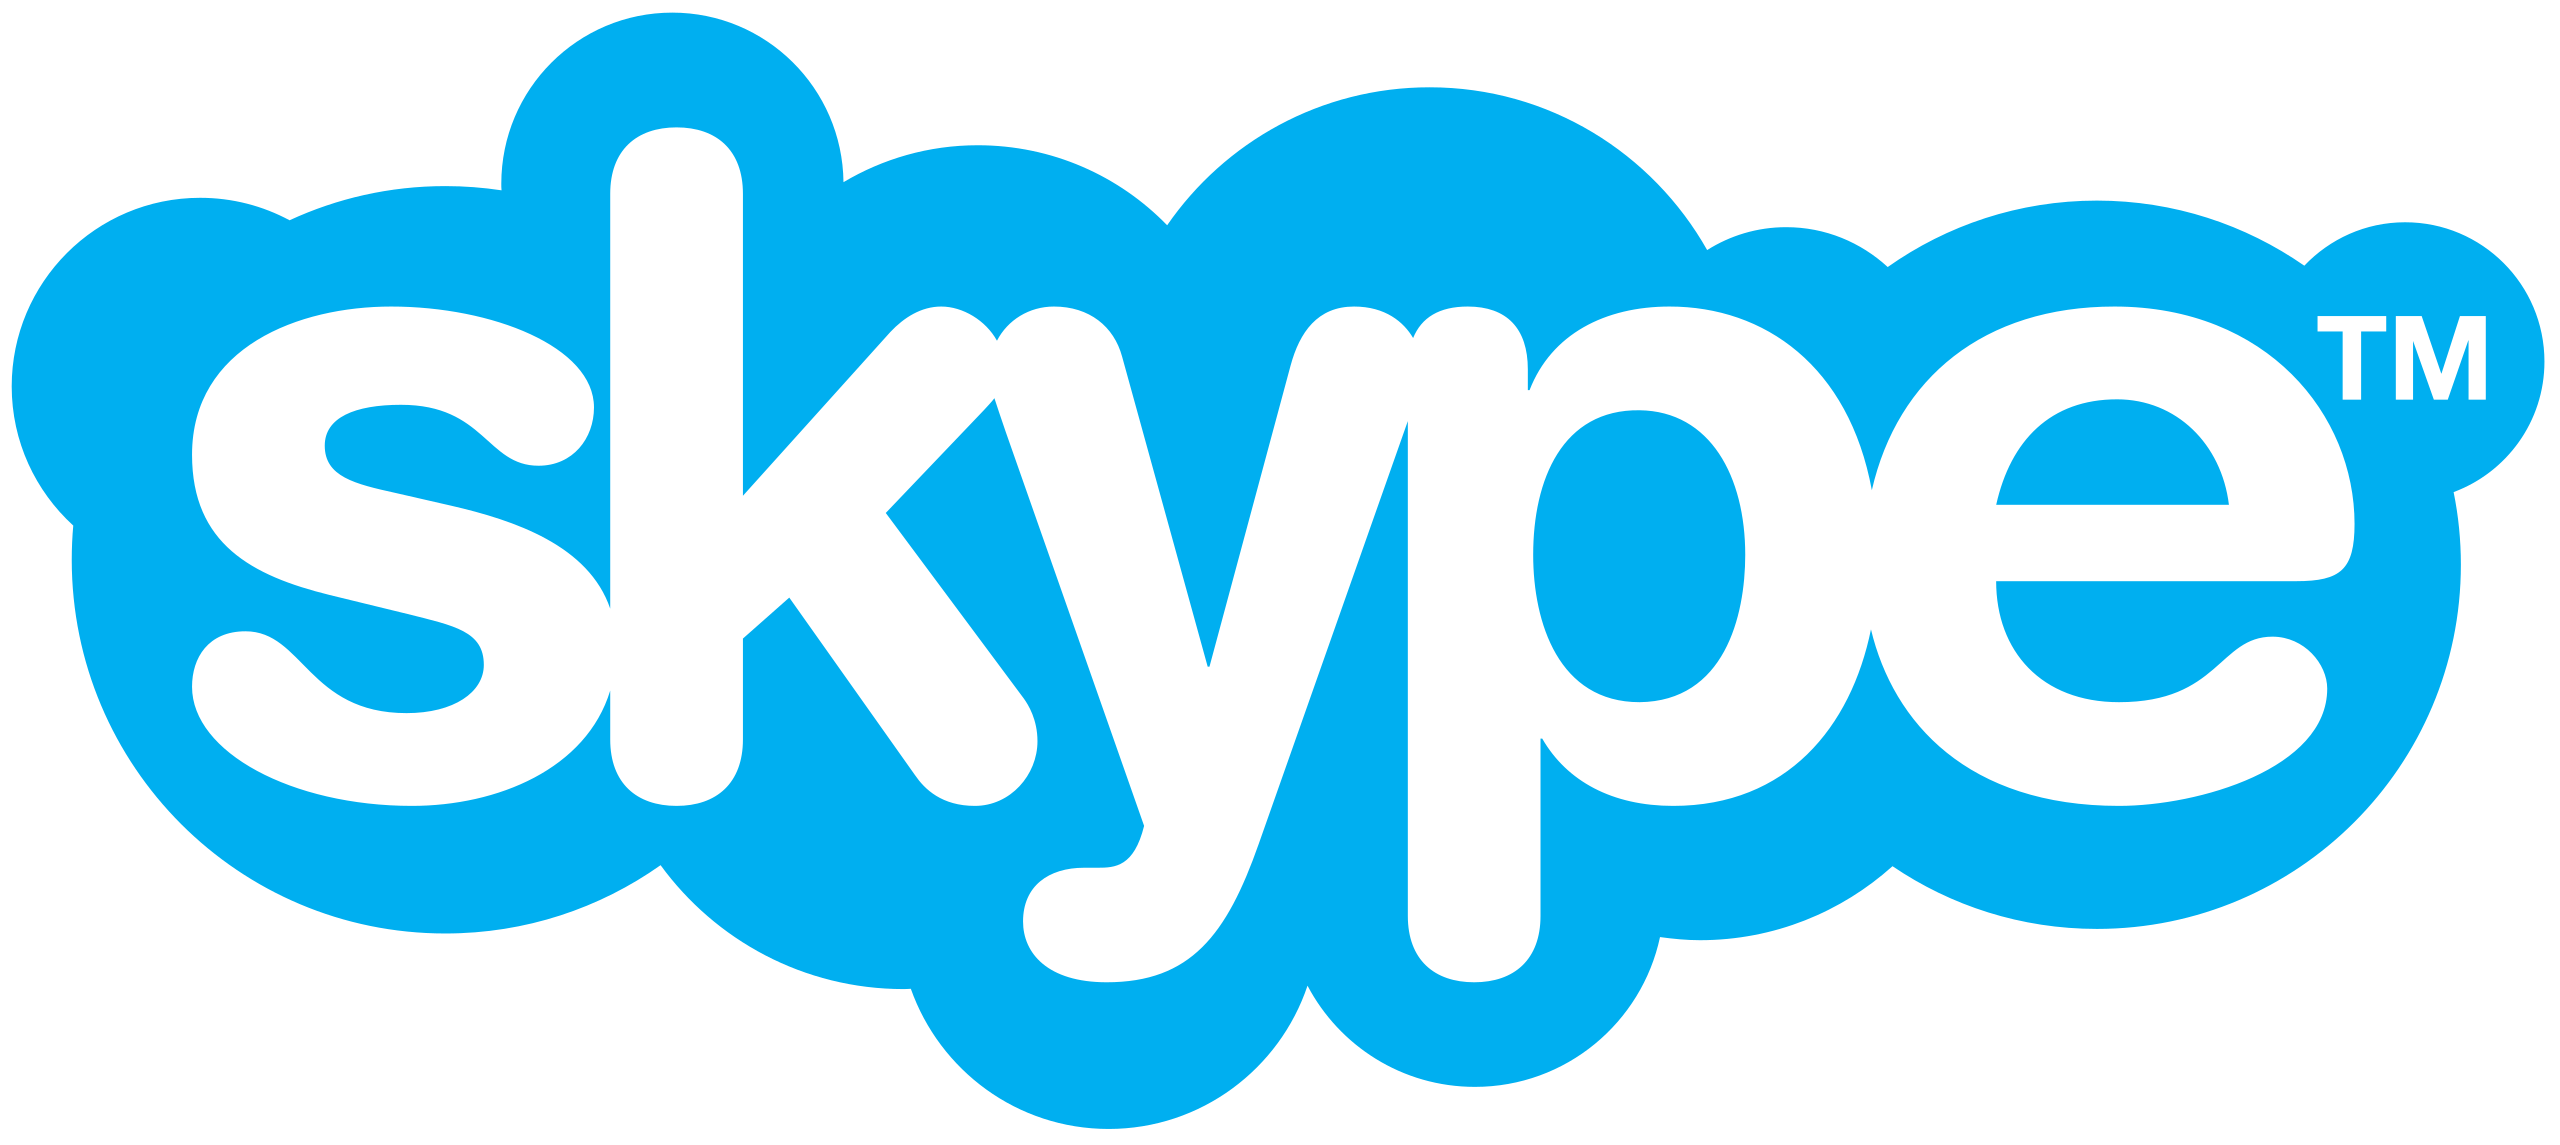 스카이프 Skype 로고